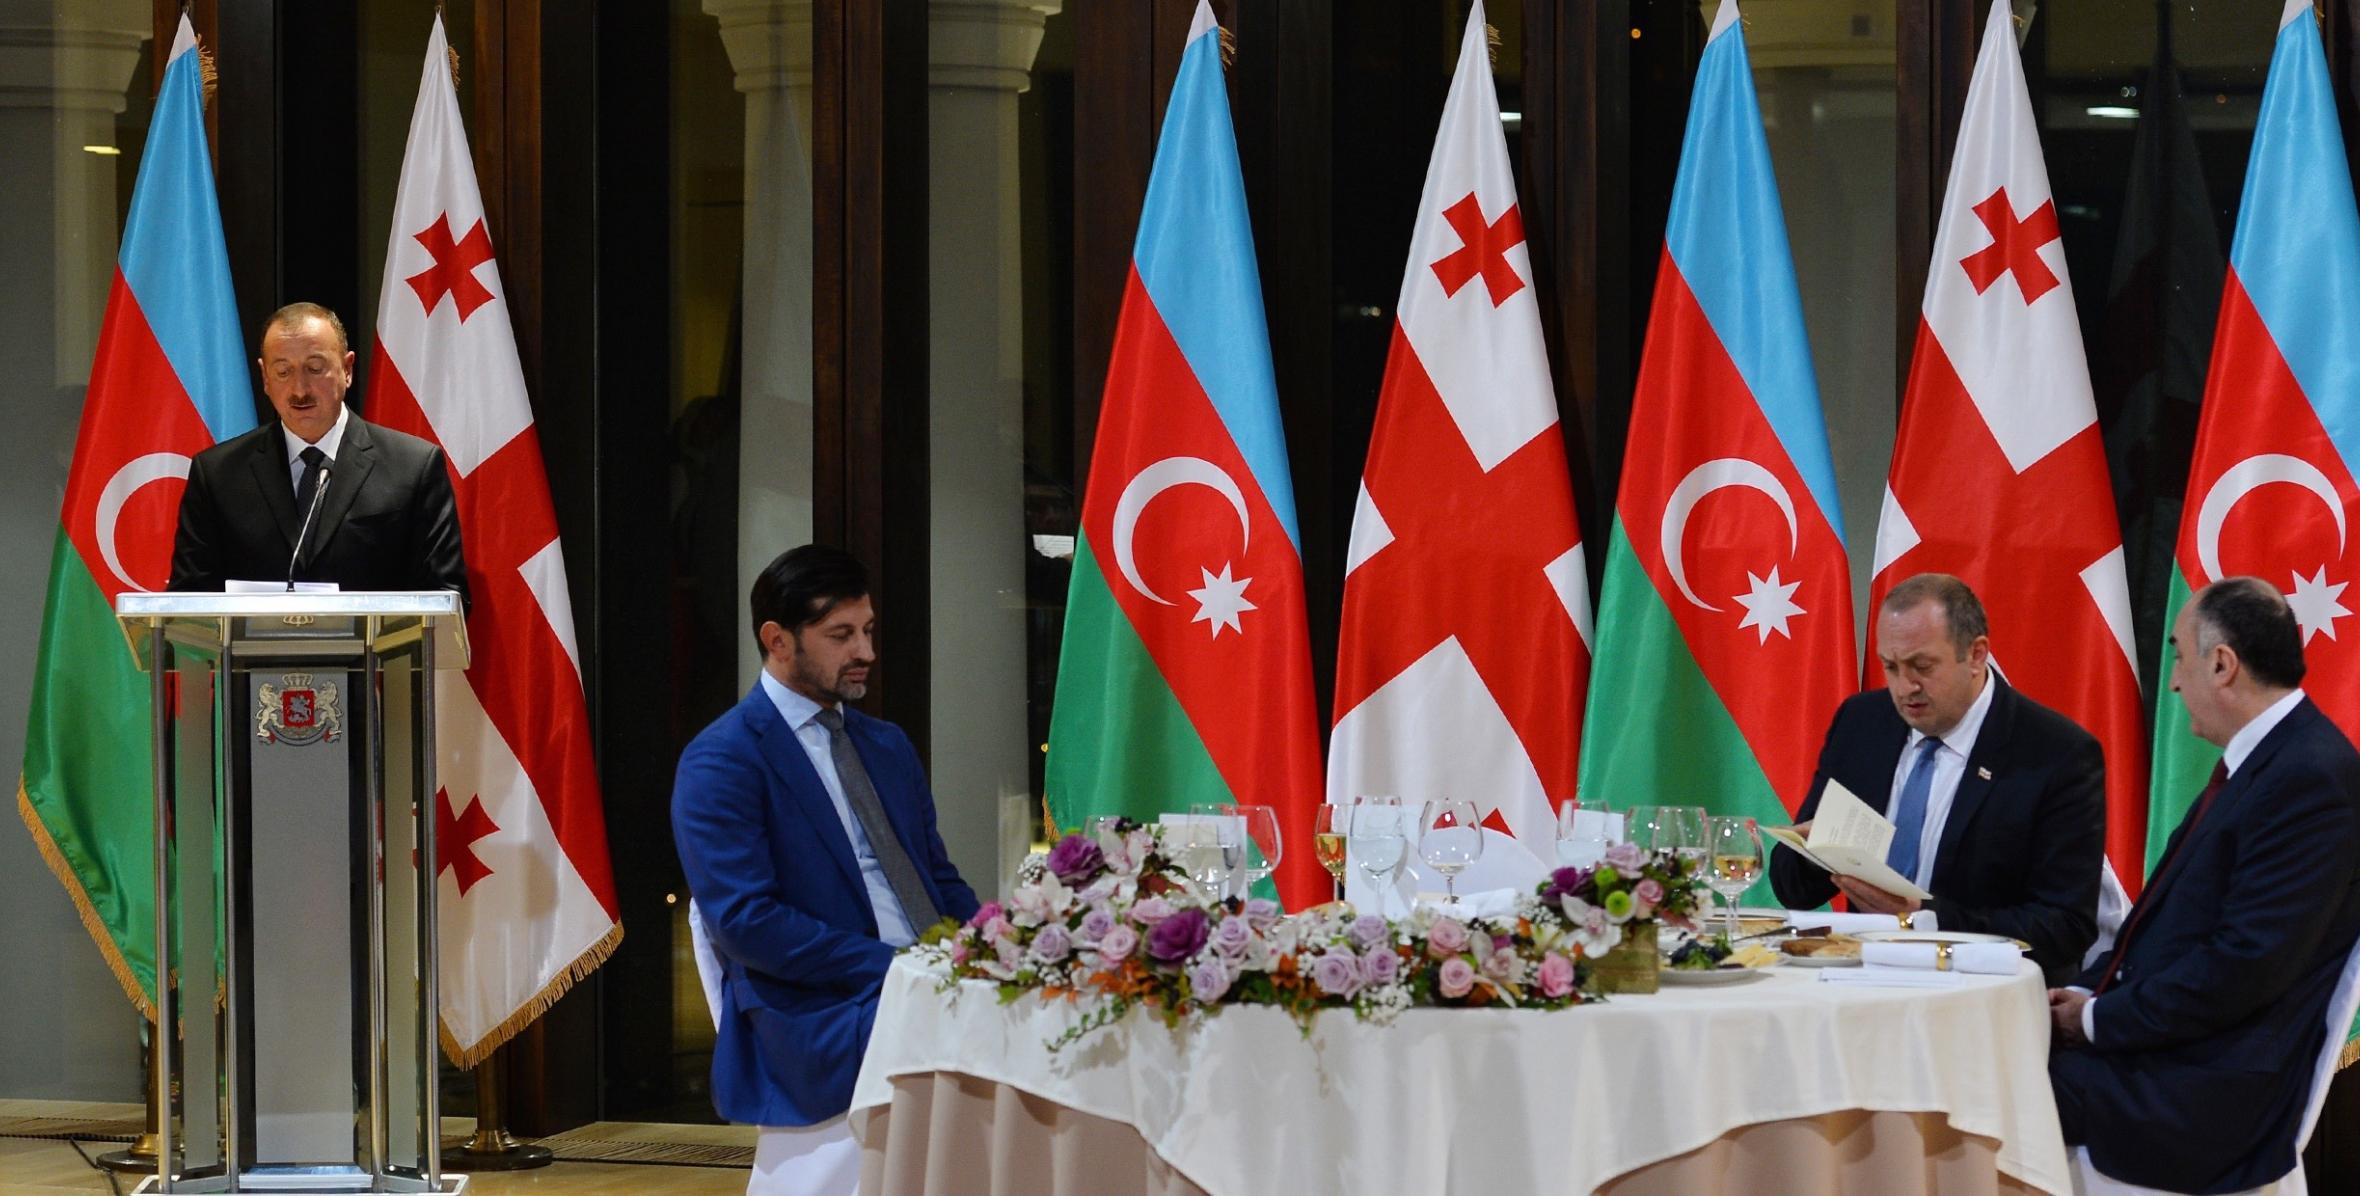 Official dinner reception was hosted on behalf of President of Georgia Giorgi Margvelashvili in honor of President Ilham Aliyev